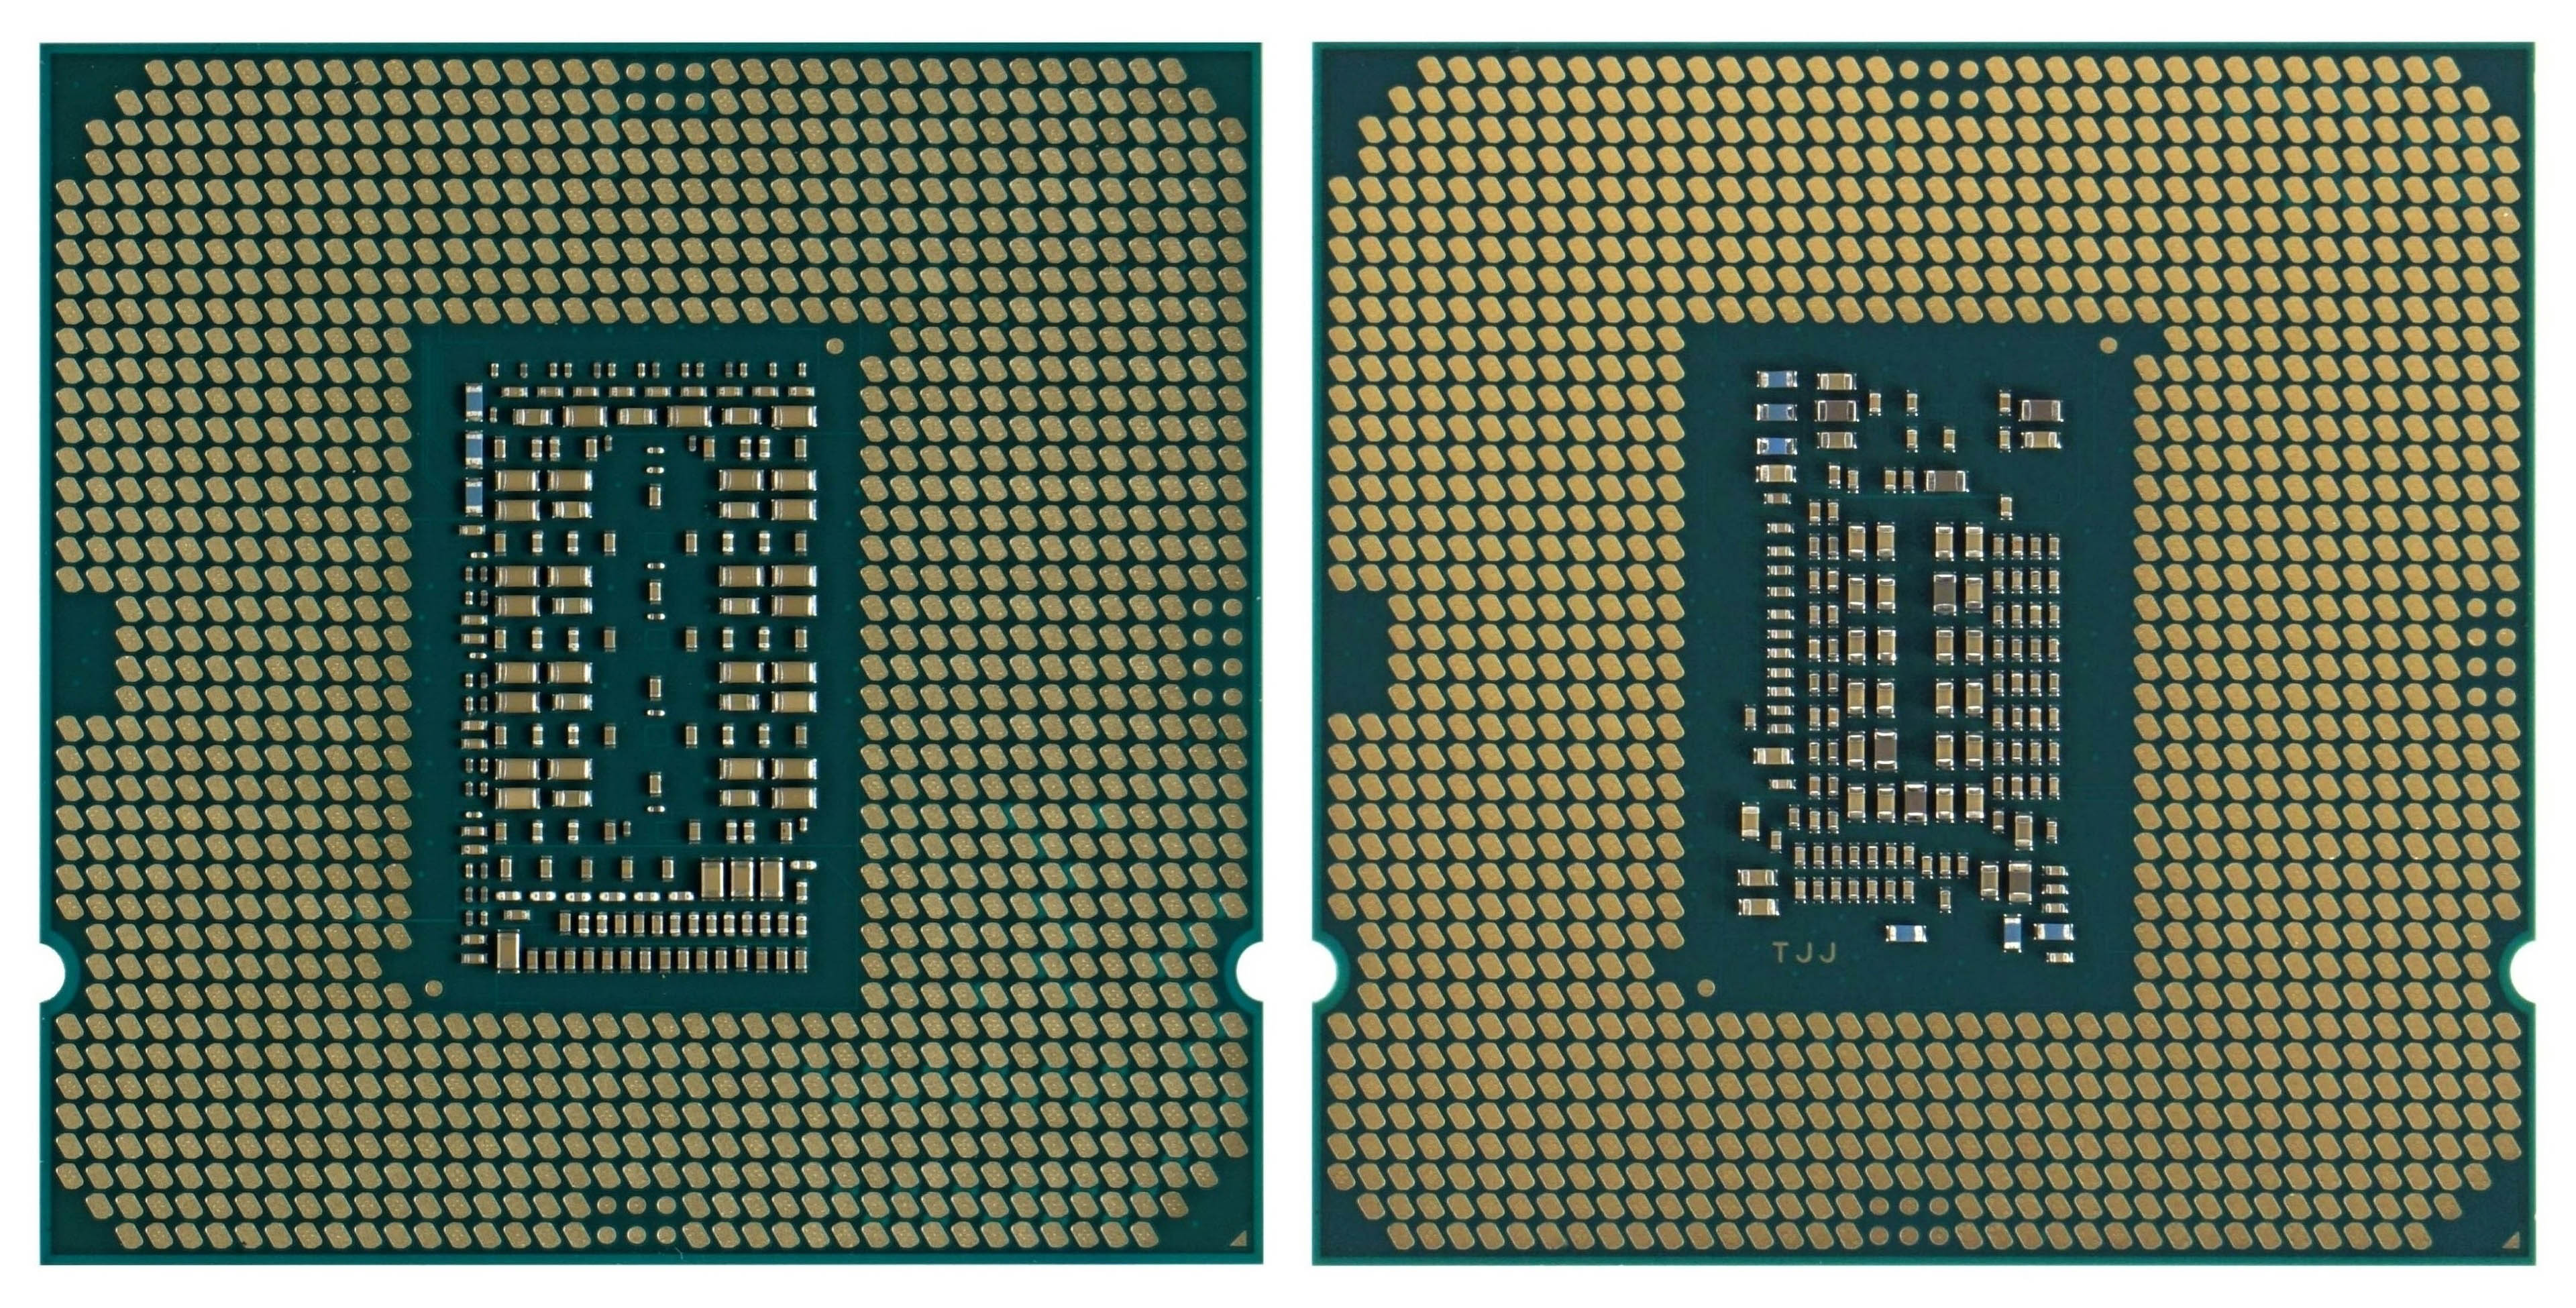 Сокет f. Intel Core i5-11400f. Процессор Intel Core i5-10400f. Процессор Intel Core i5-11400f OEM. Intel Core i9-11900k.